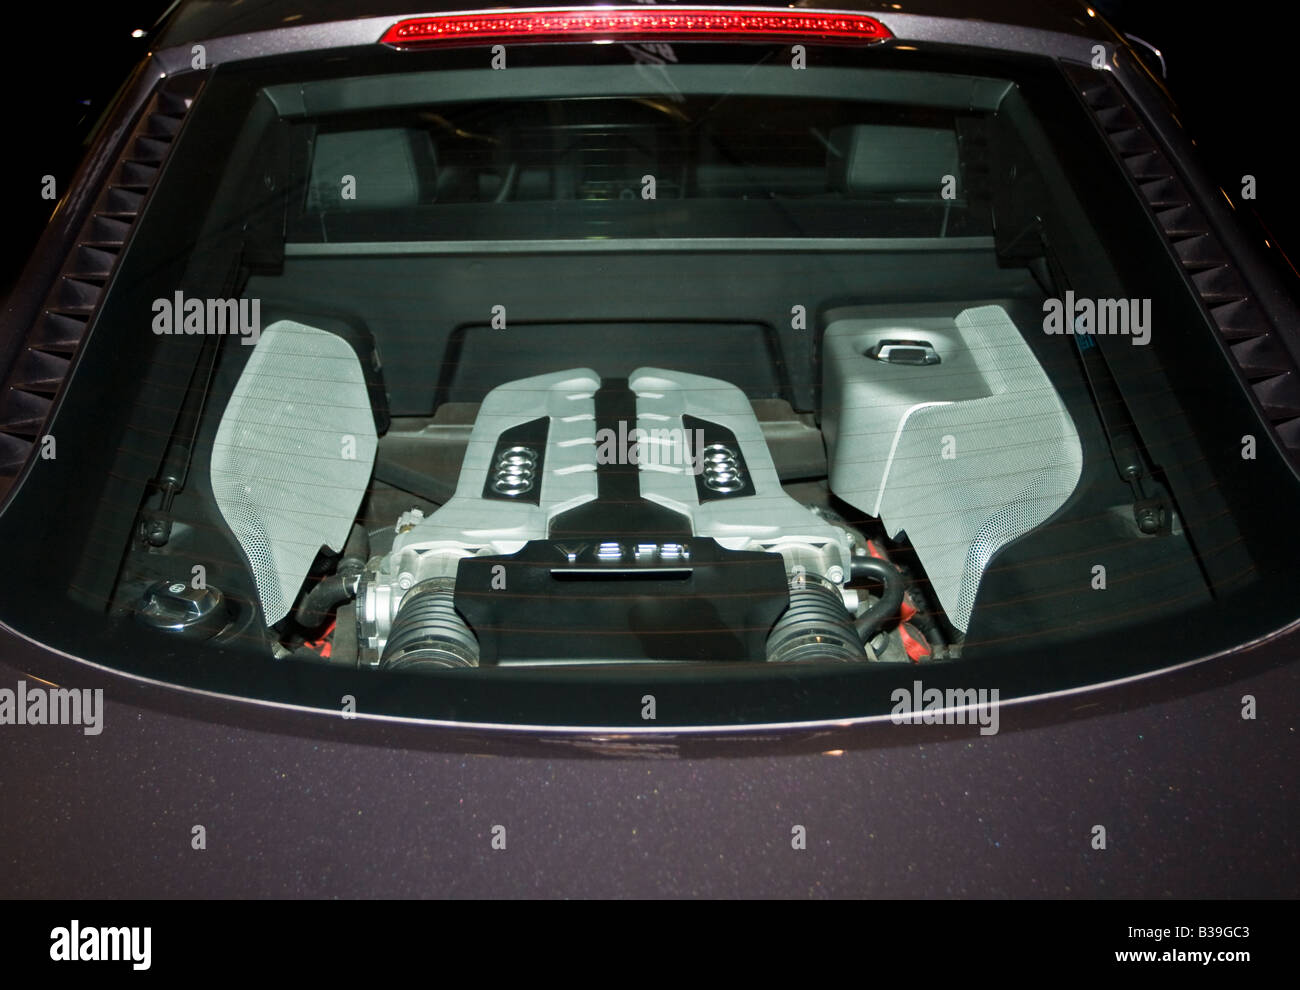 Audi r8 engine -Fotos und -Bildmaterial in hoher Auflösung – Alamy